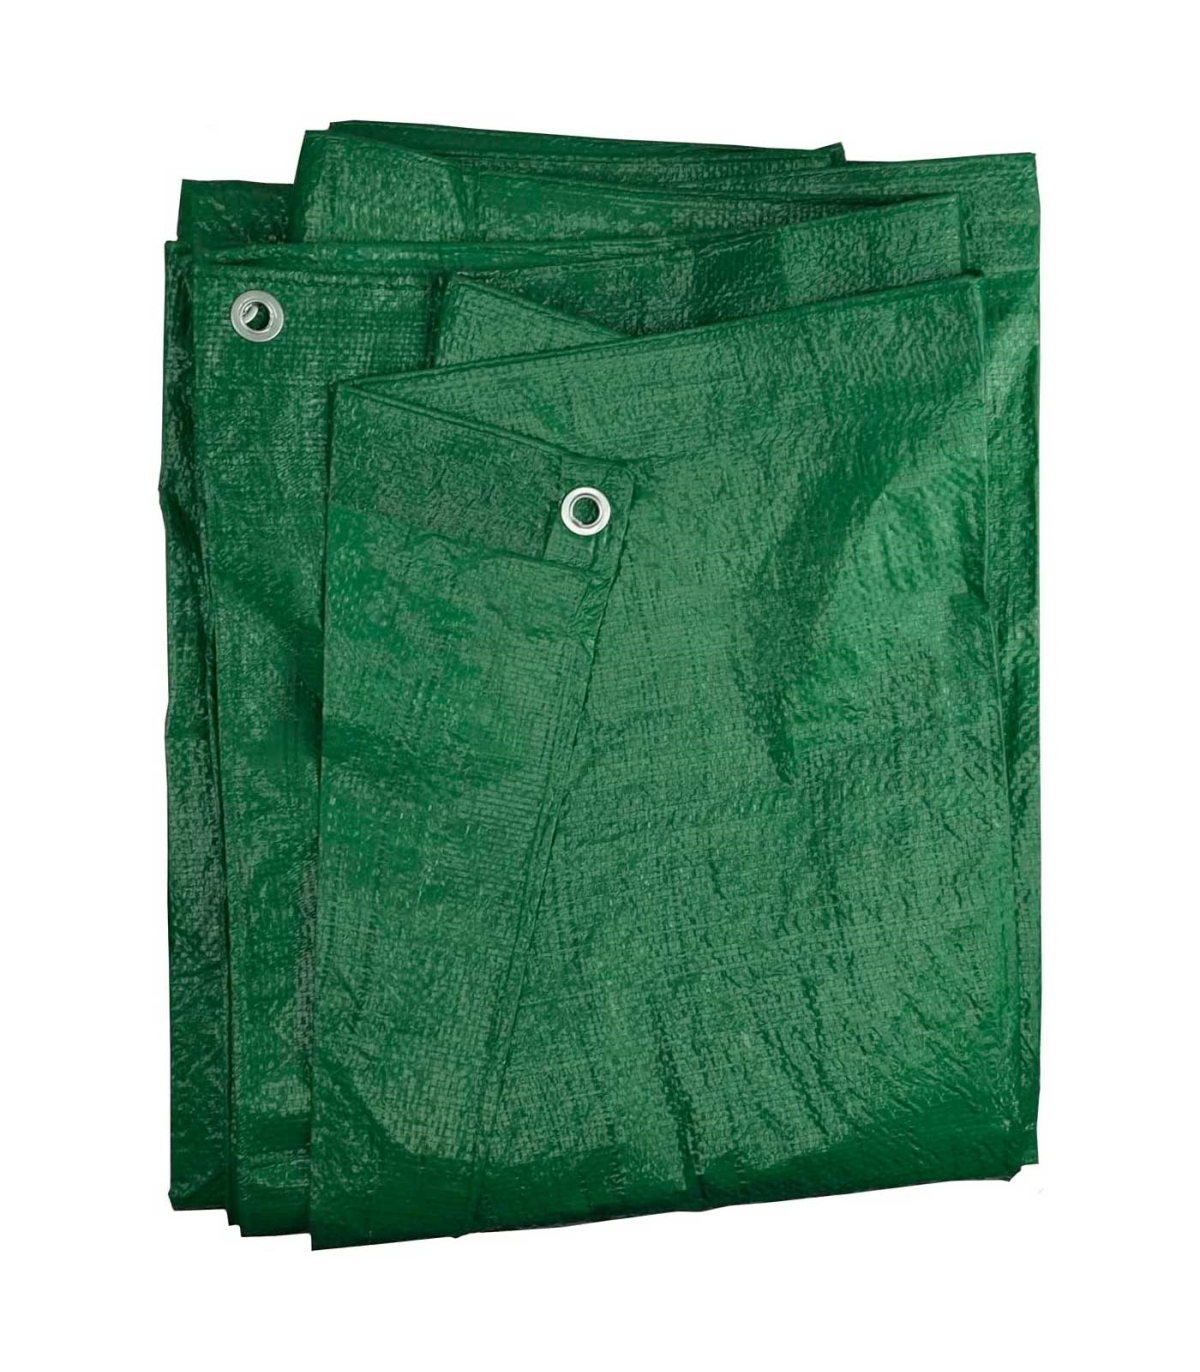 Mochila de lona 2 bolsillos de lona de color verde resistente